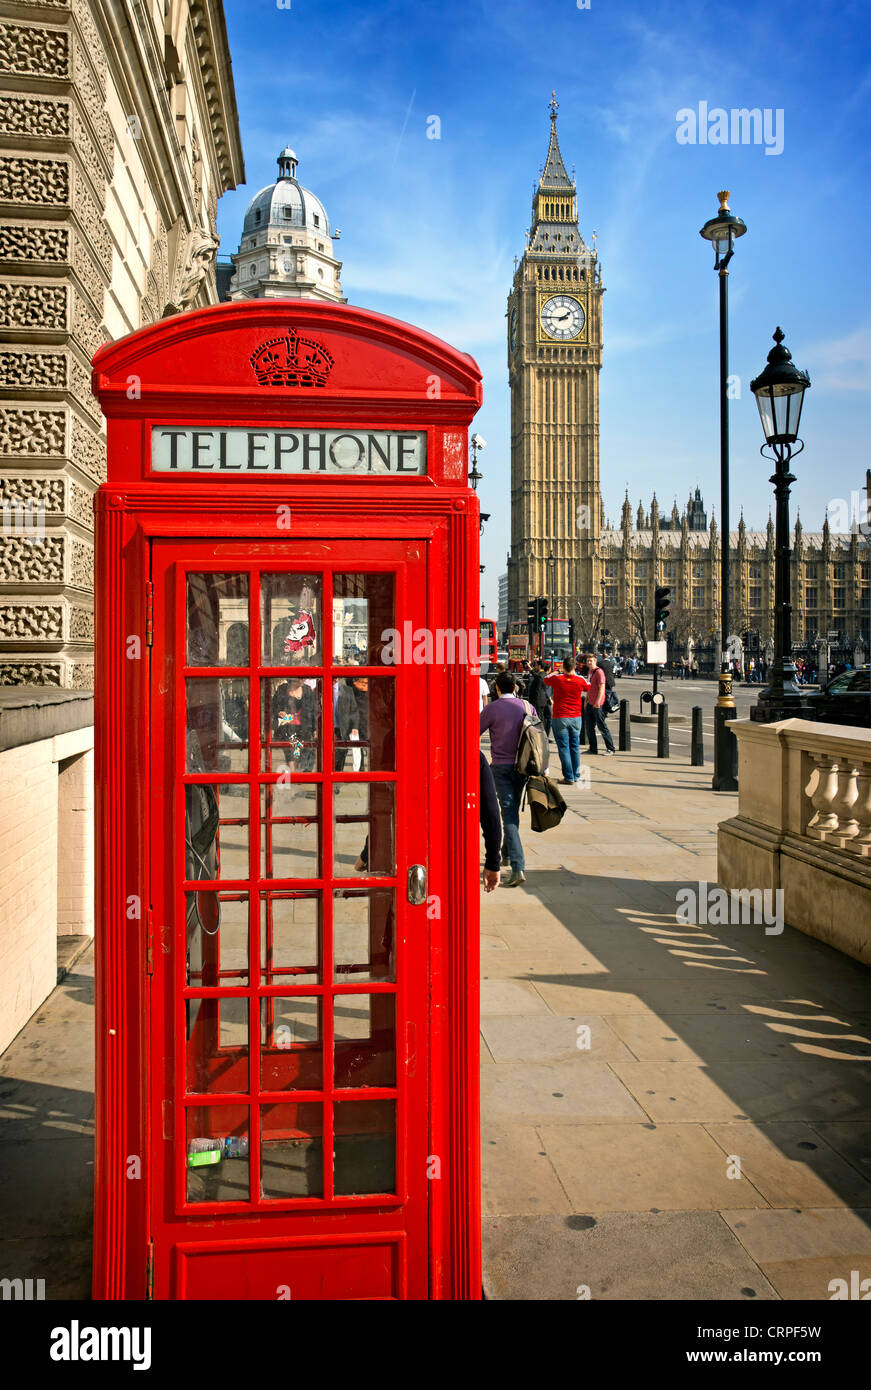 Une boîte de téléphone rouge et la tour de l'horloge connu sous le nom de Big Ben au Palais de Westminster. Banque D'Images